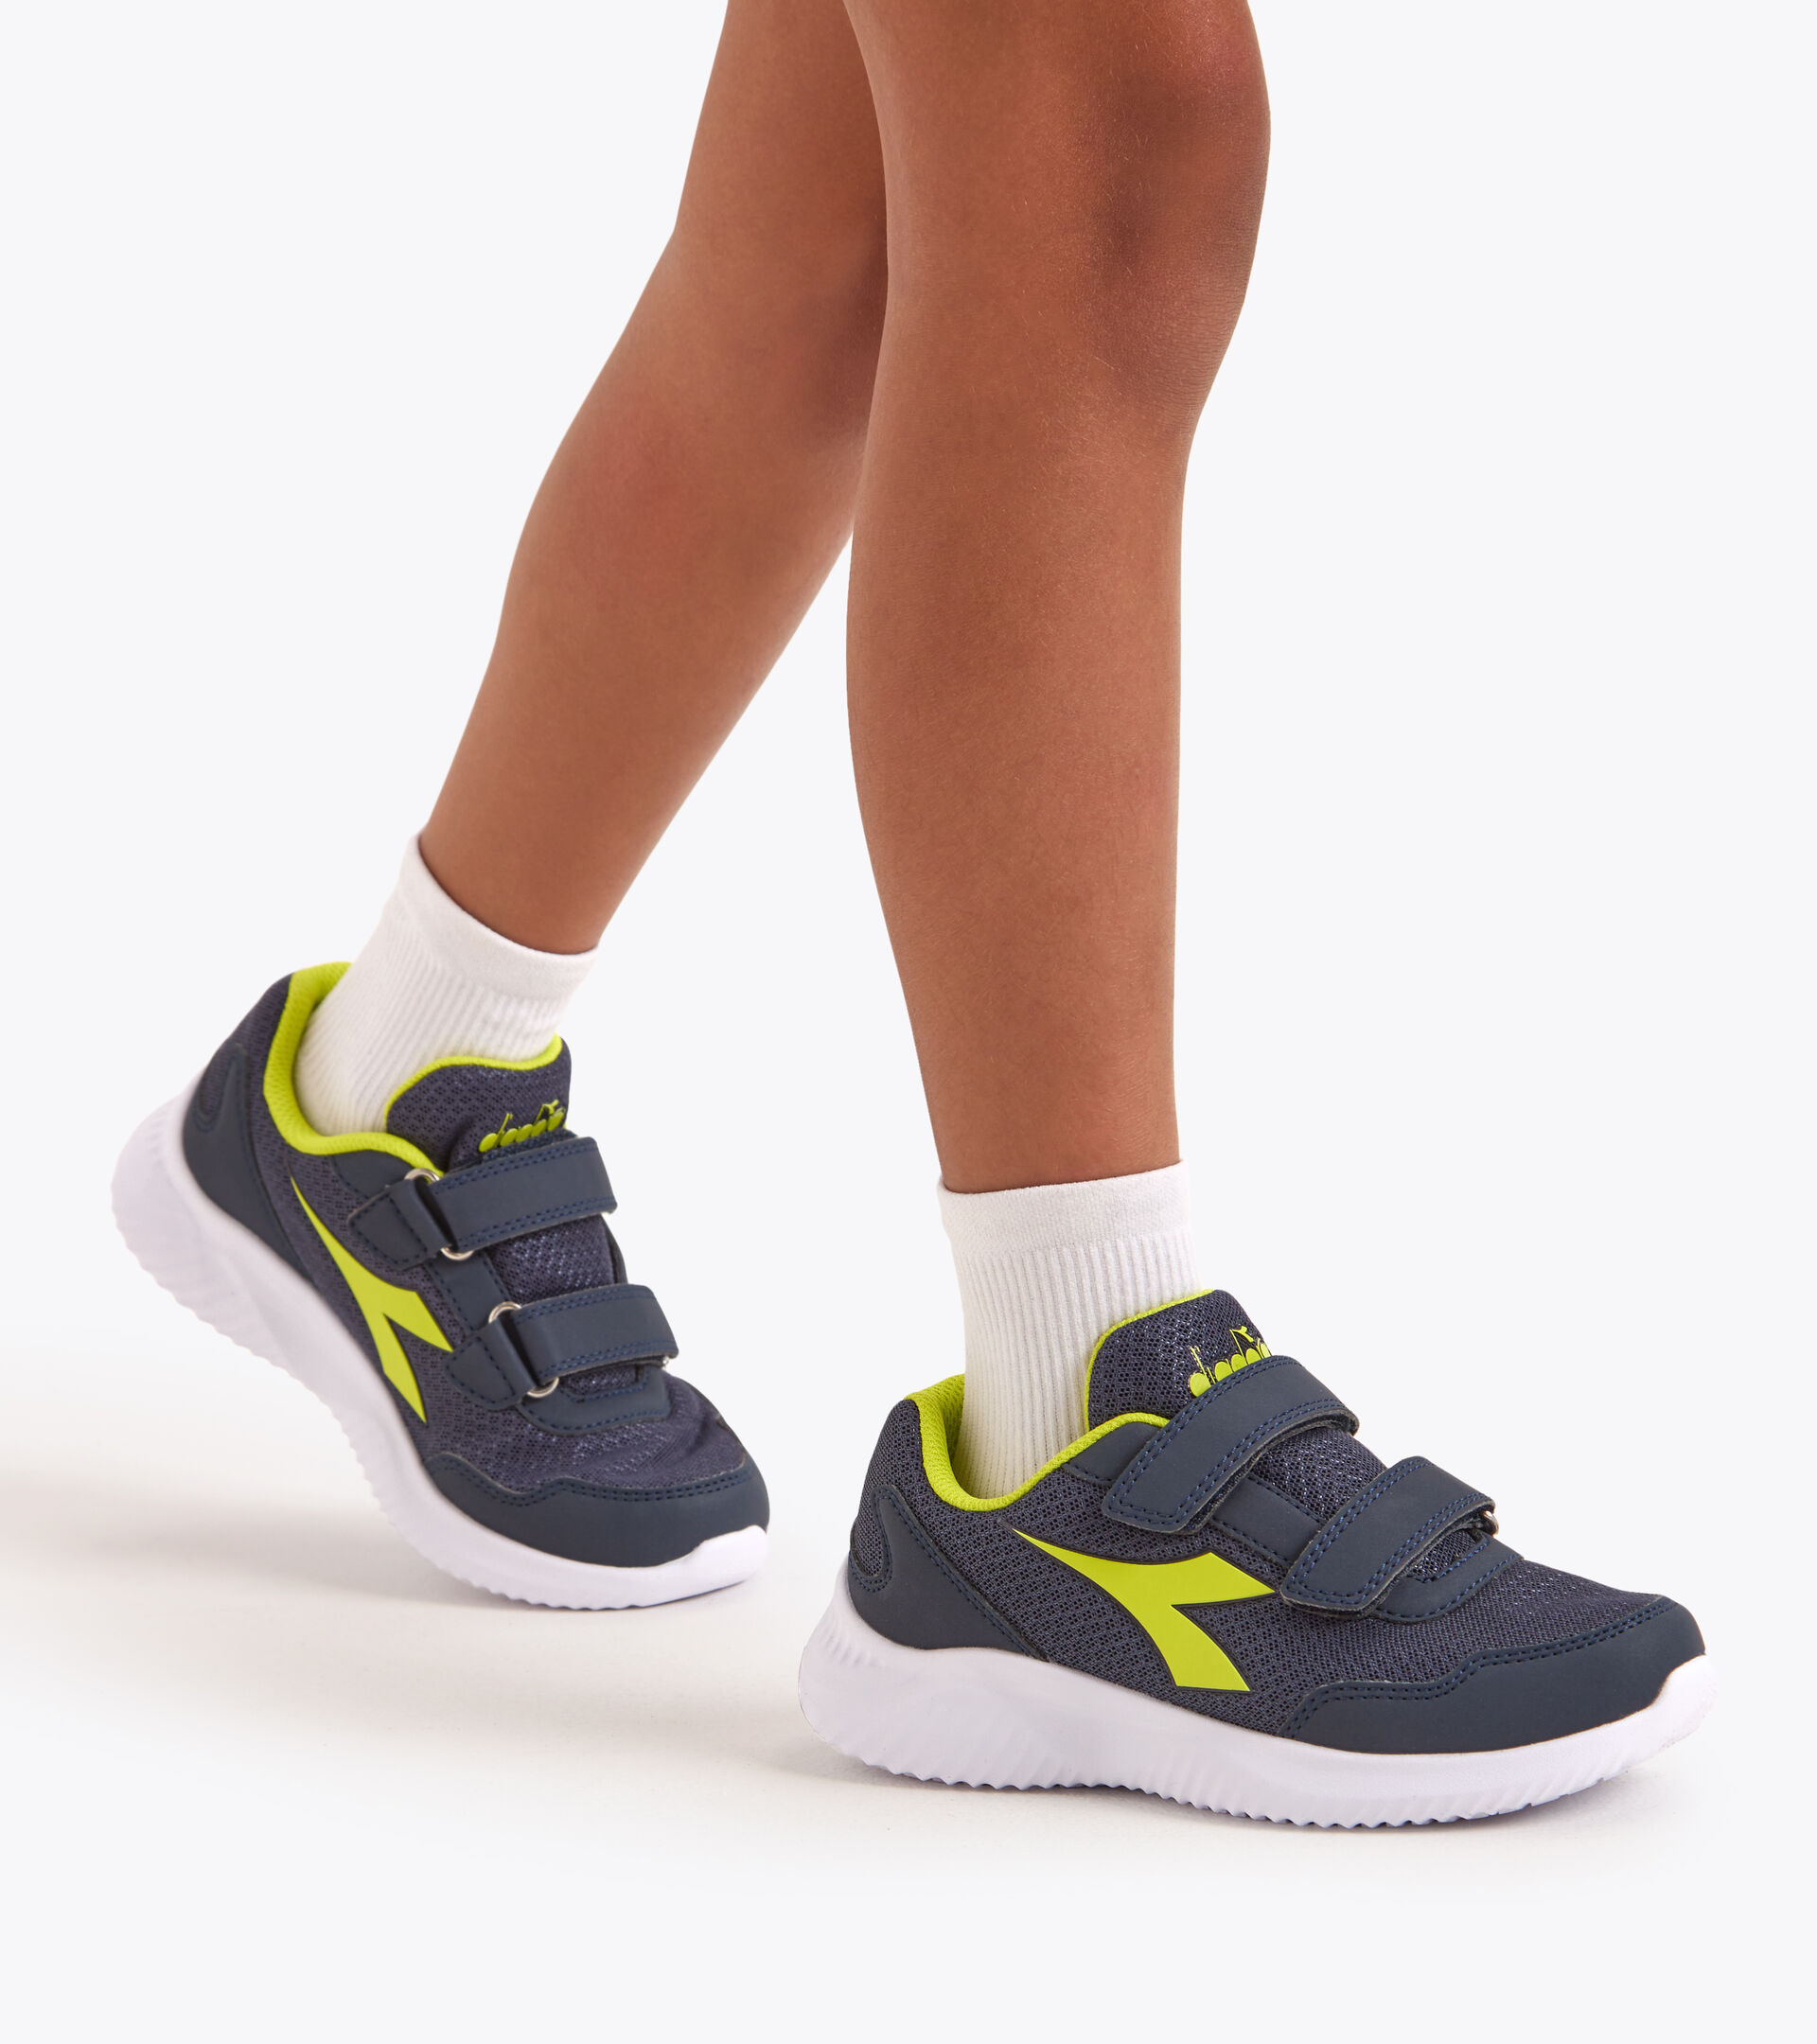 Zapatillas de running juveniles con velcro - Unisex ROBIN 3 JR V LIRIO NGRO/MANANTIALES DE SULF - Diadora